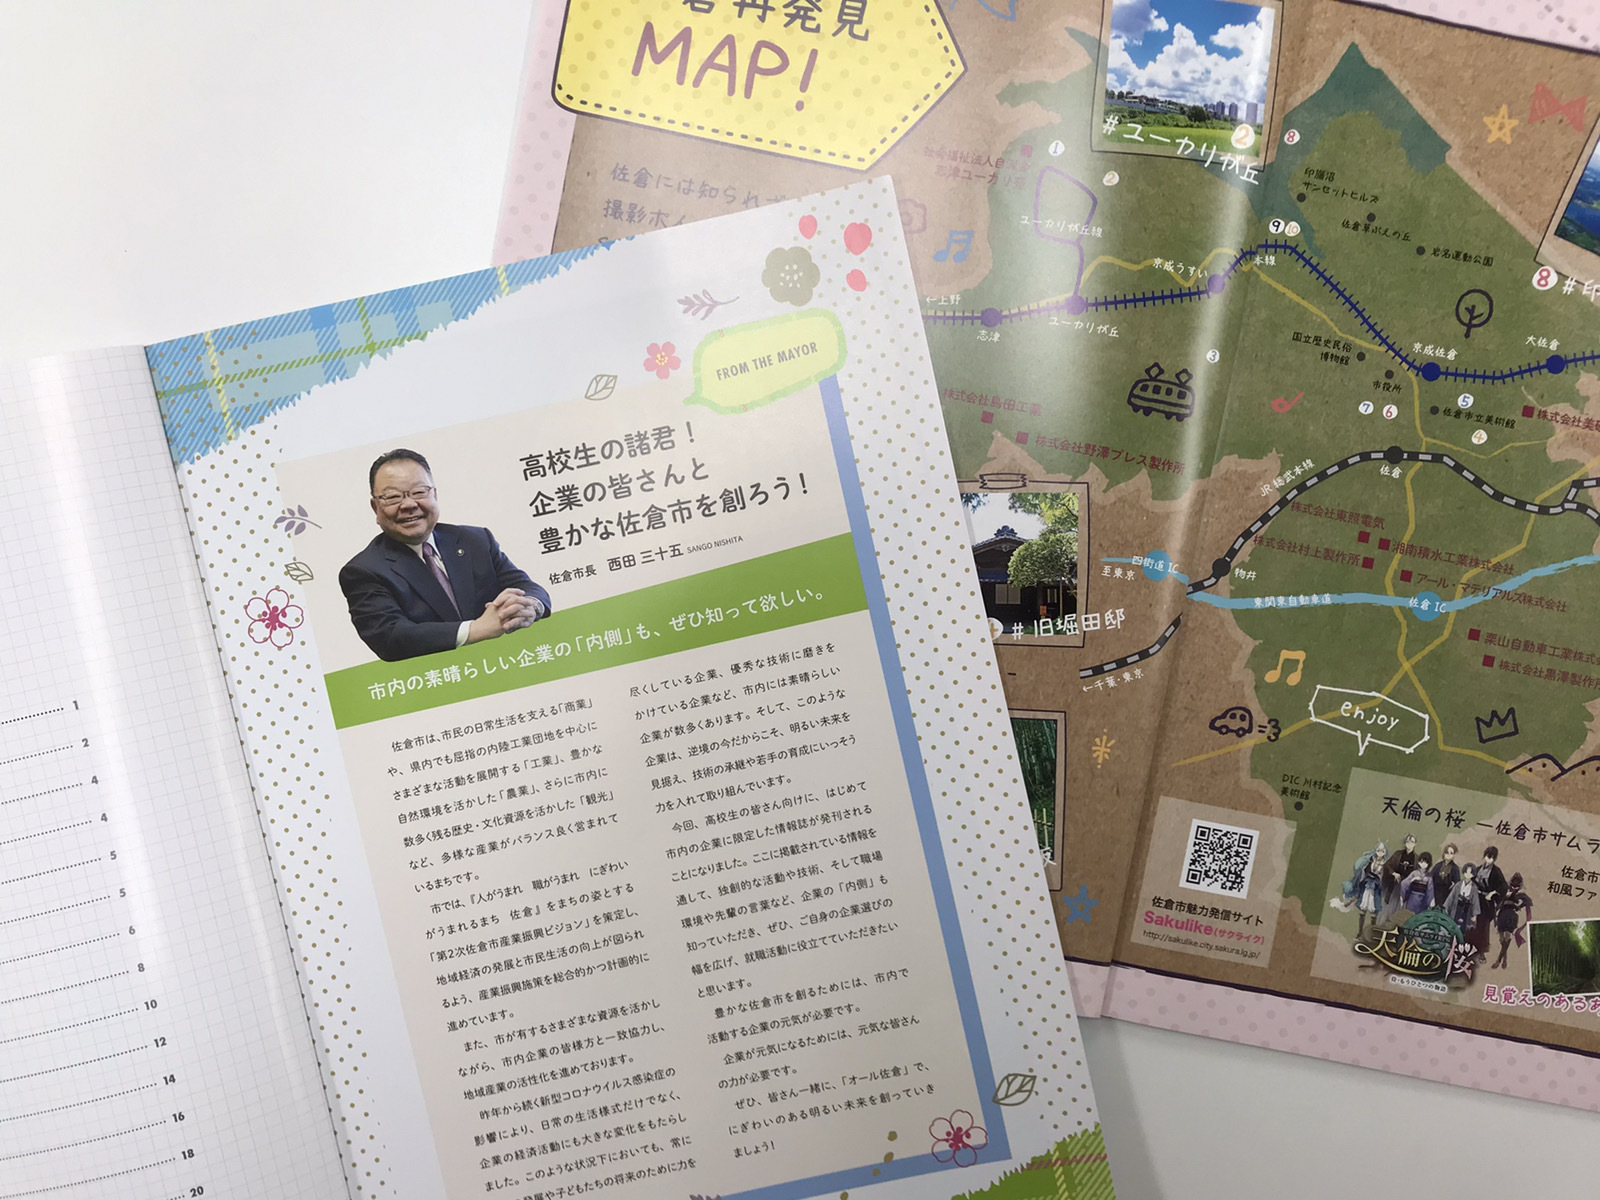 佐倉市 西田三十五市長からのメッセージや佐倉再発見マップも